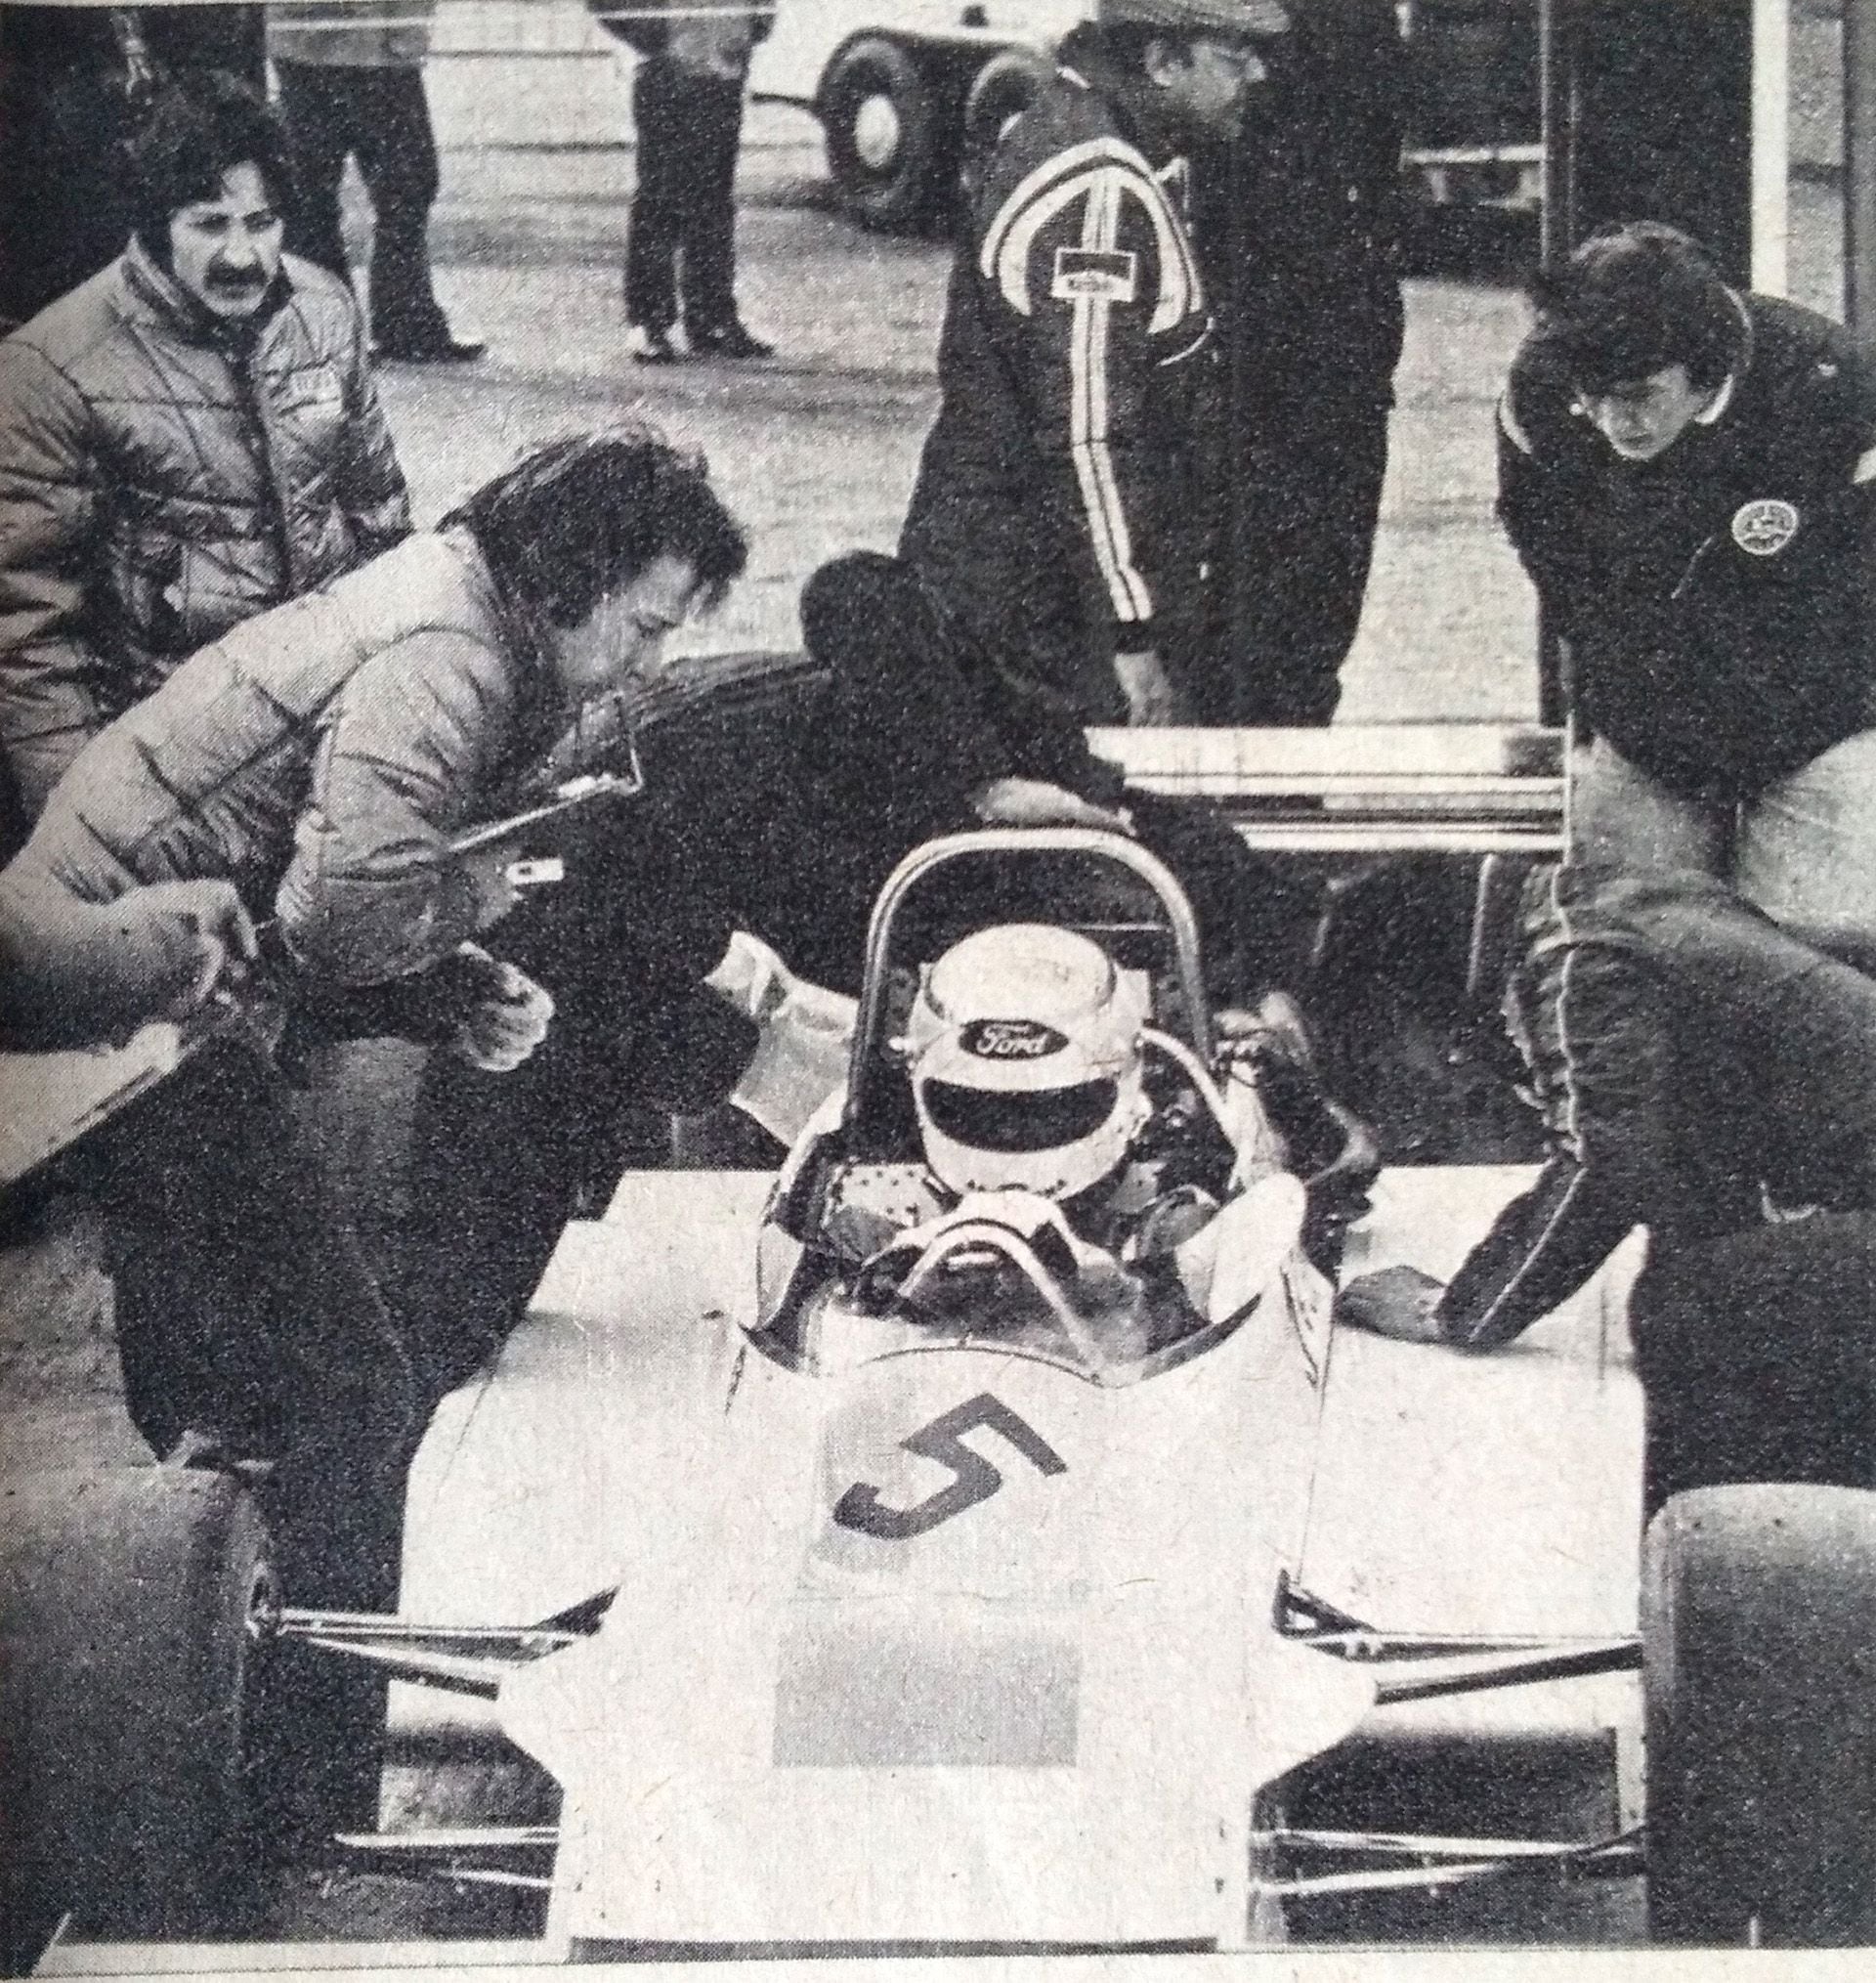 Traverso en la Fórmula 2 Europea 1979.